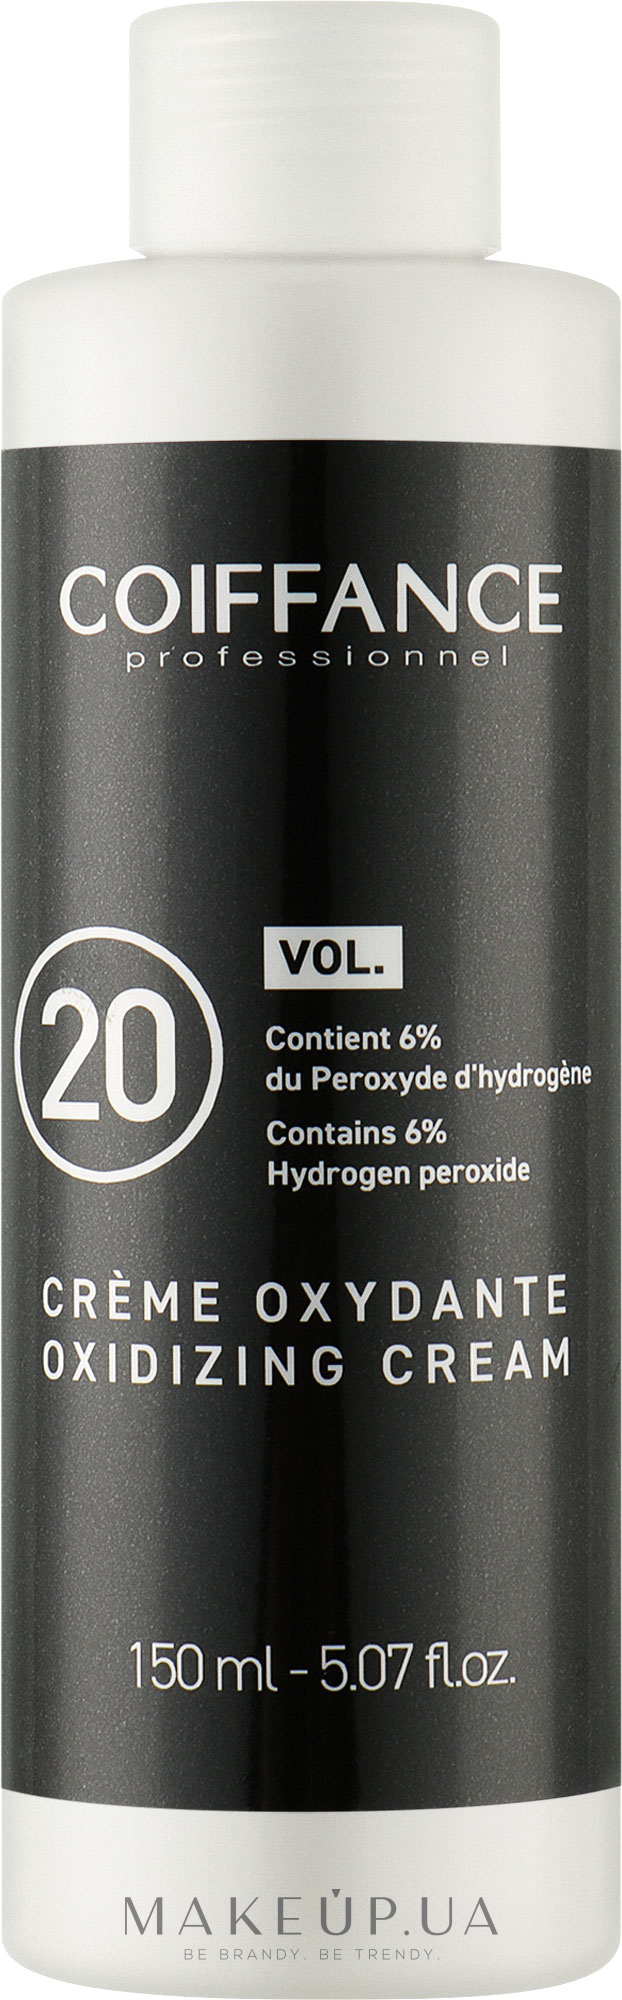 Крем-оксидант 6 % - Coiffance Oxidizing Cream 20 VOL — фото 150ml